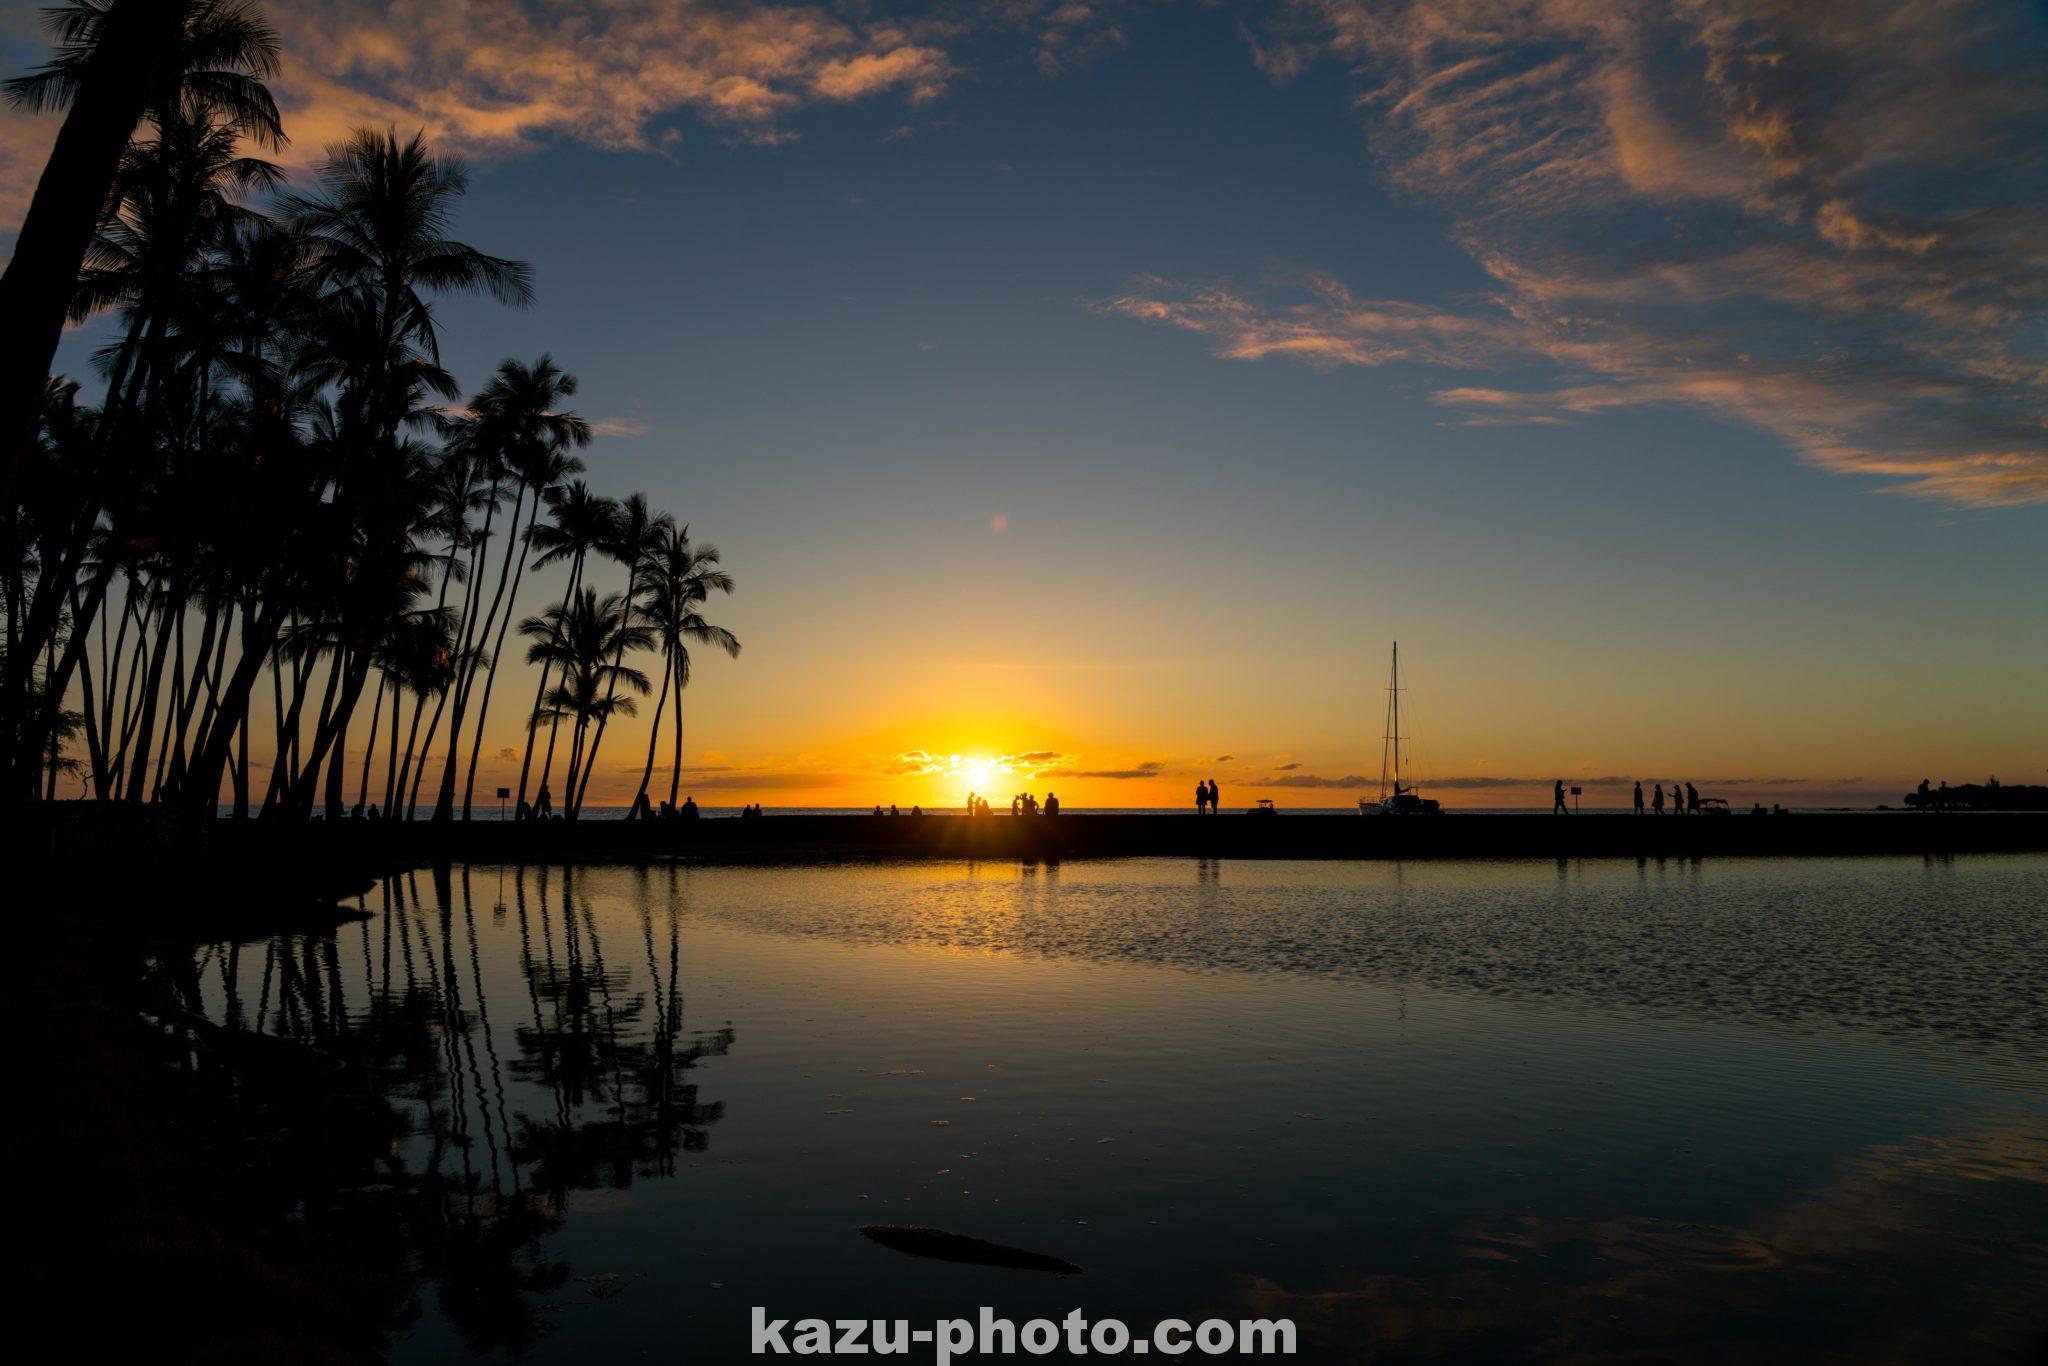 ハワイ島の絶景夕日スポット ワイコロアで撮影したサンセットの写真 αのevfが見せる世界